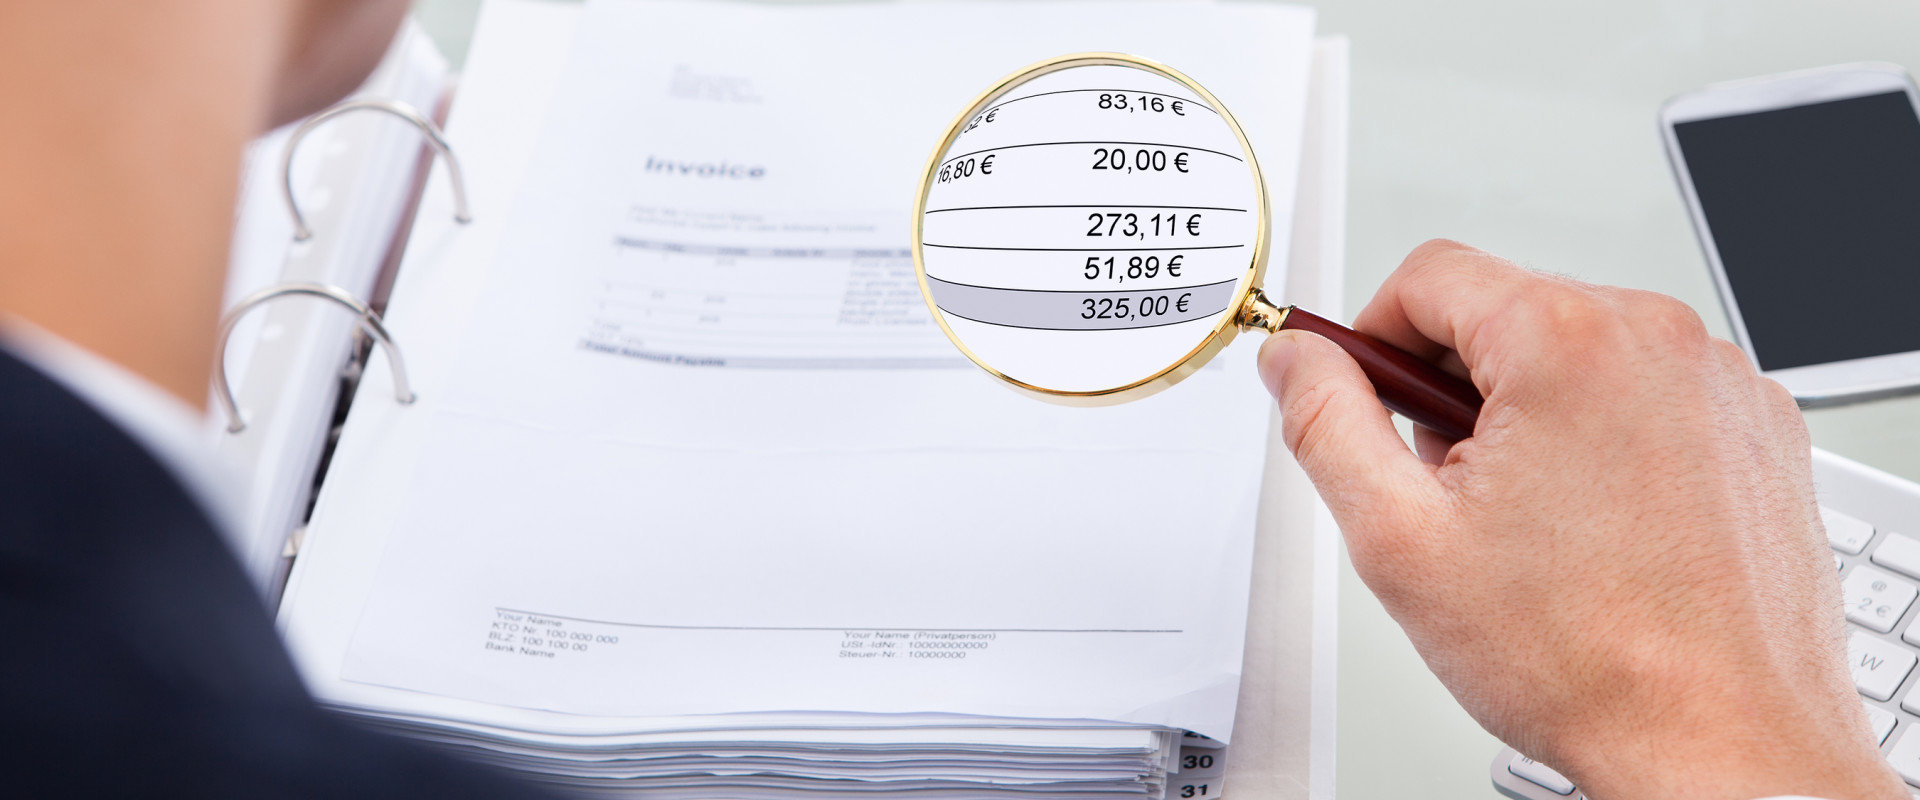 Belastingaangifte doen - Checklist van benodigde papieren